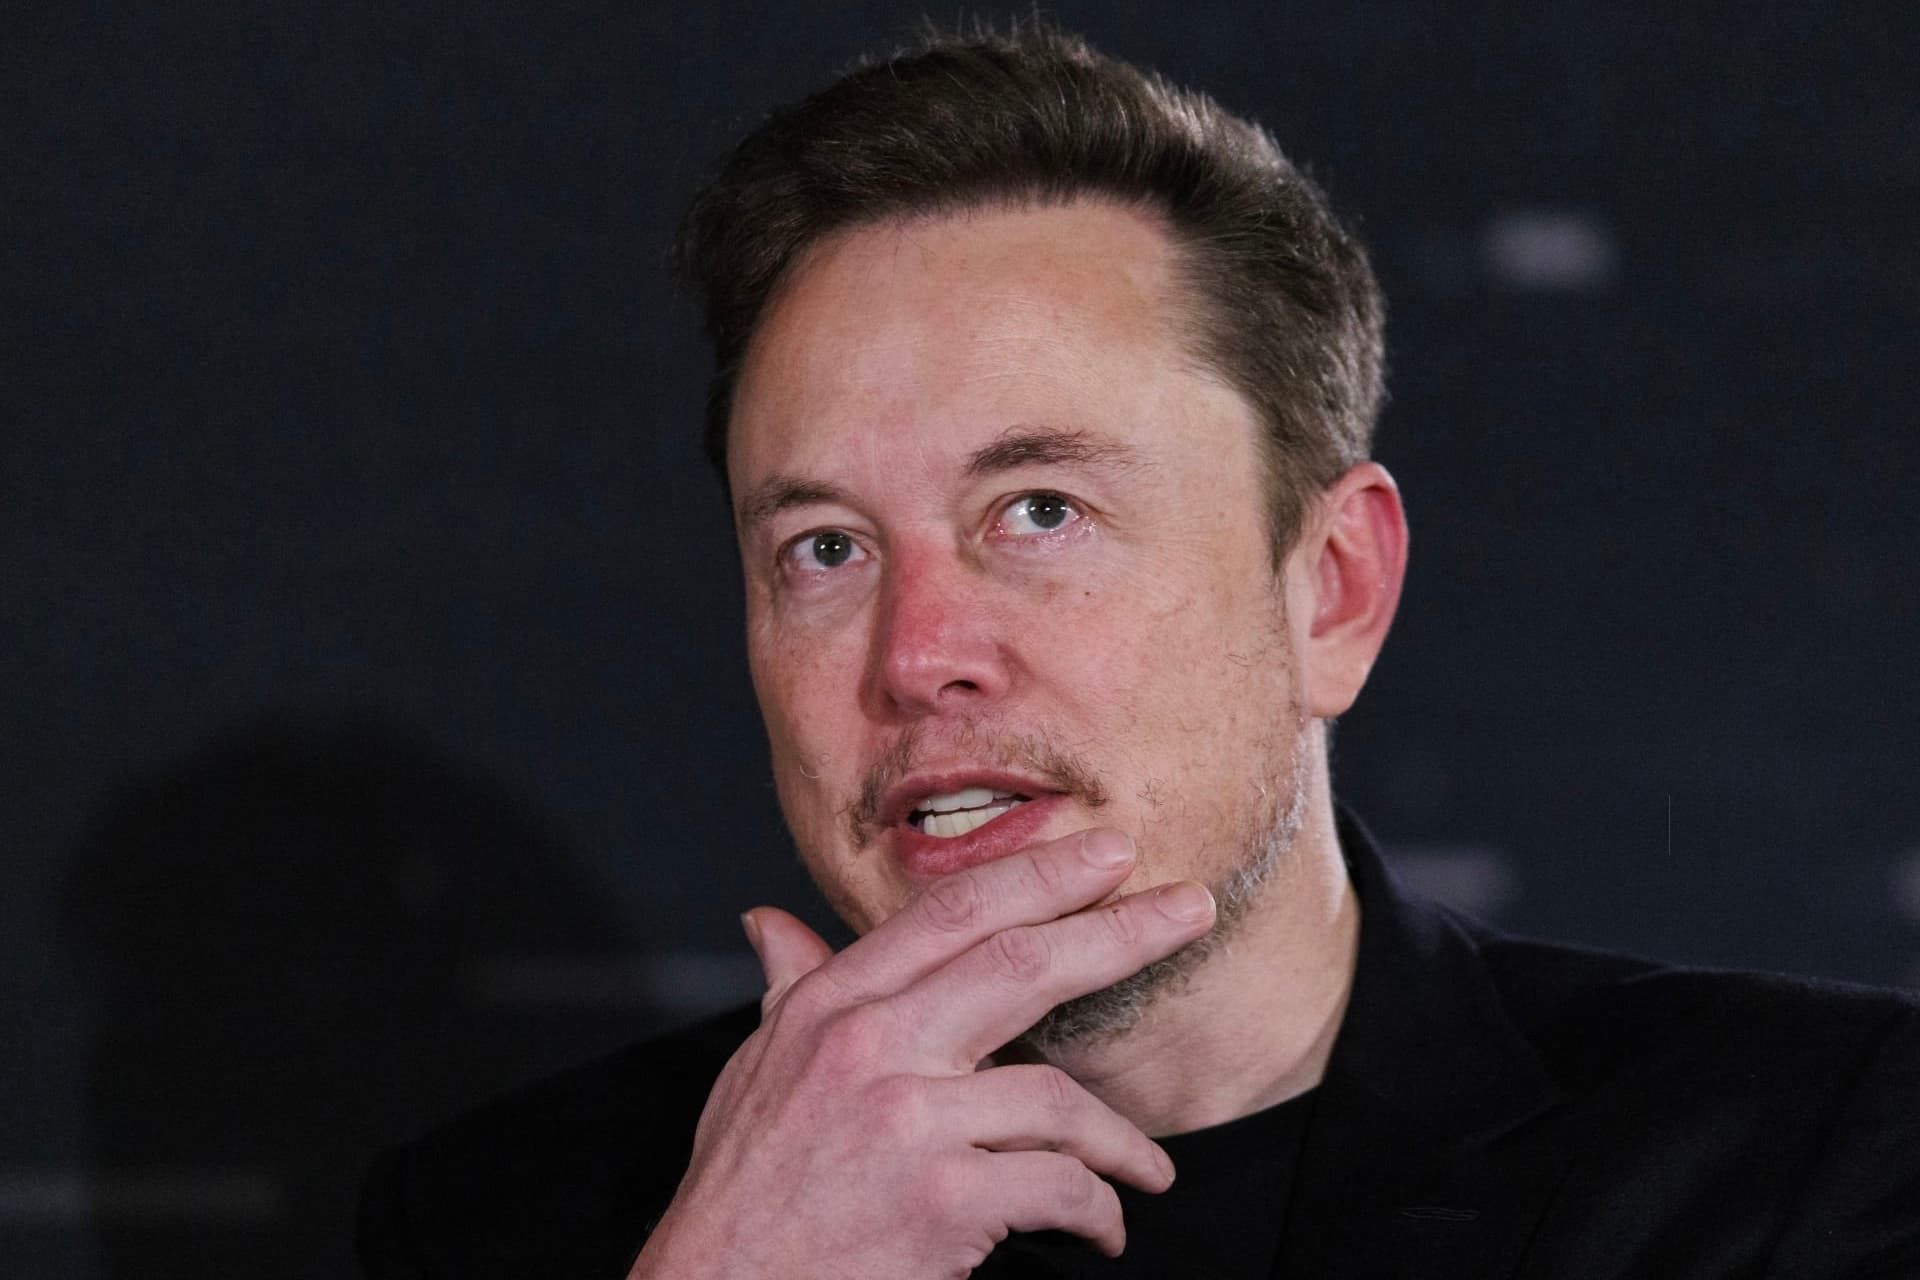 ایلان ماسک / Elon Musk در حال فکر کردن و حرف زدن